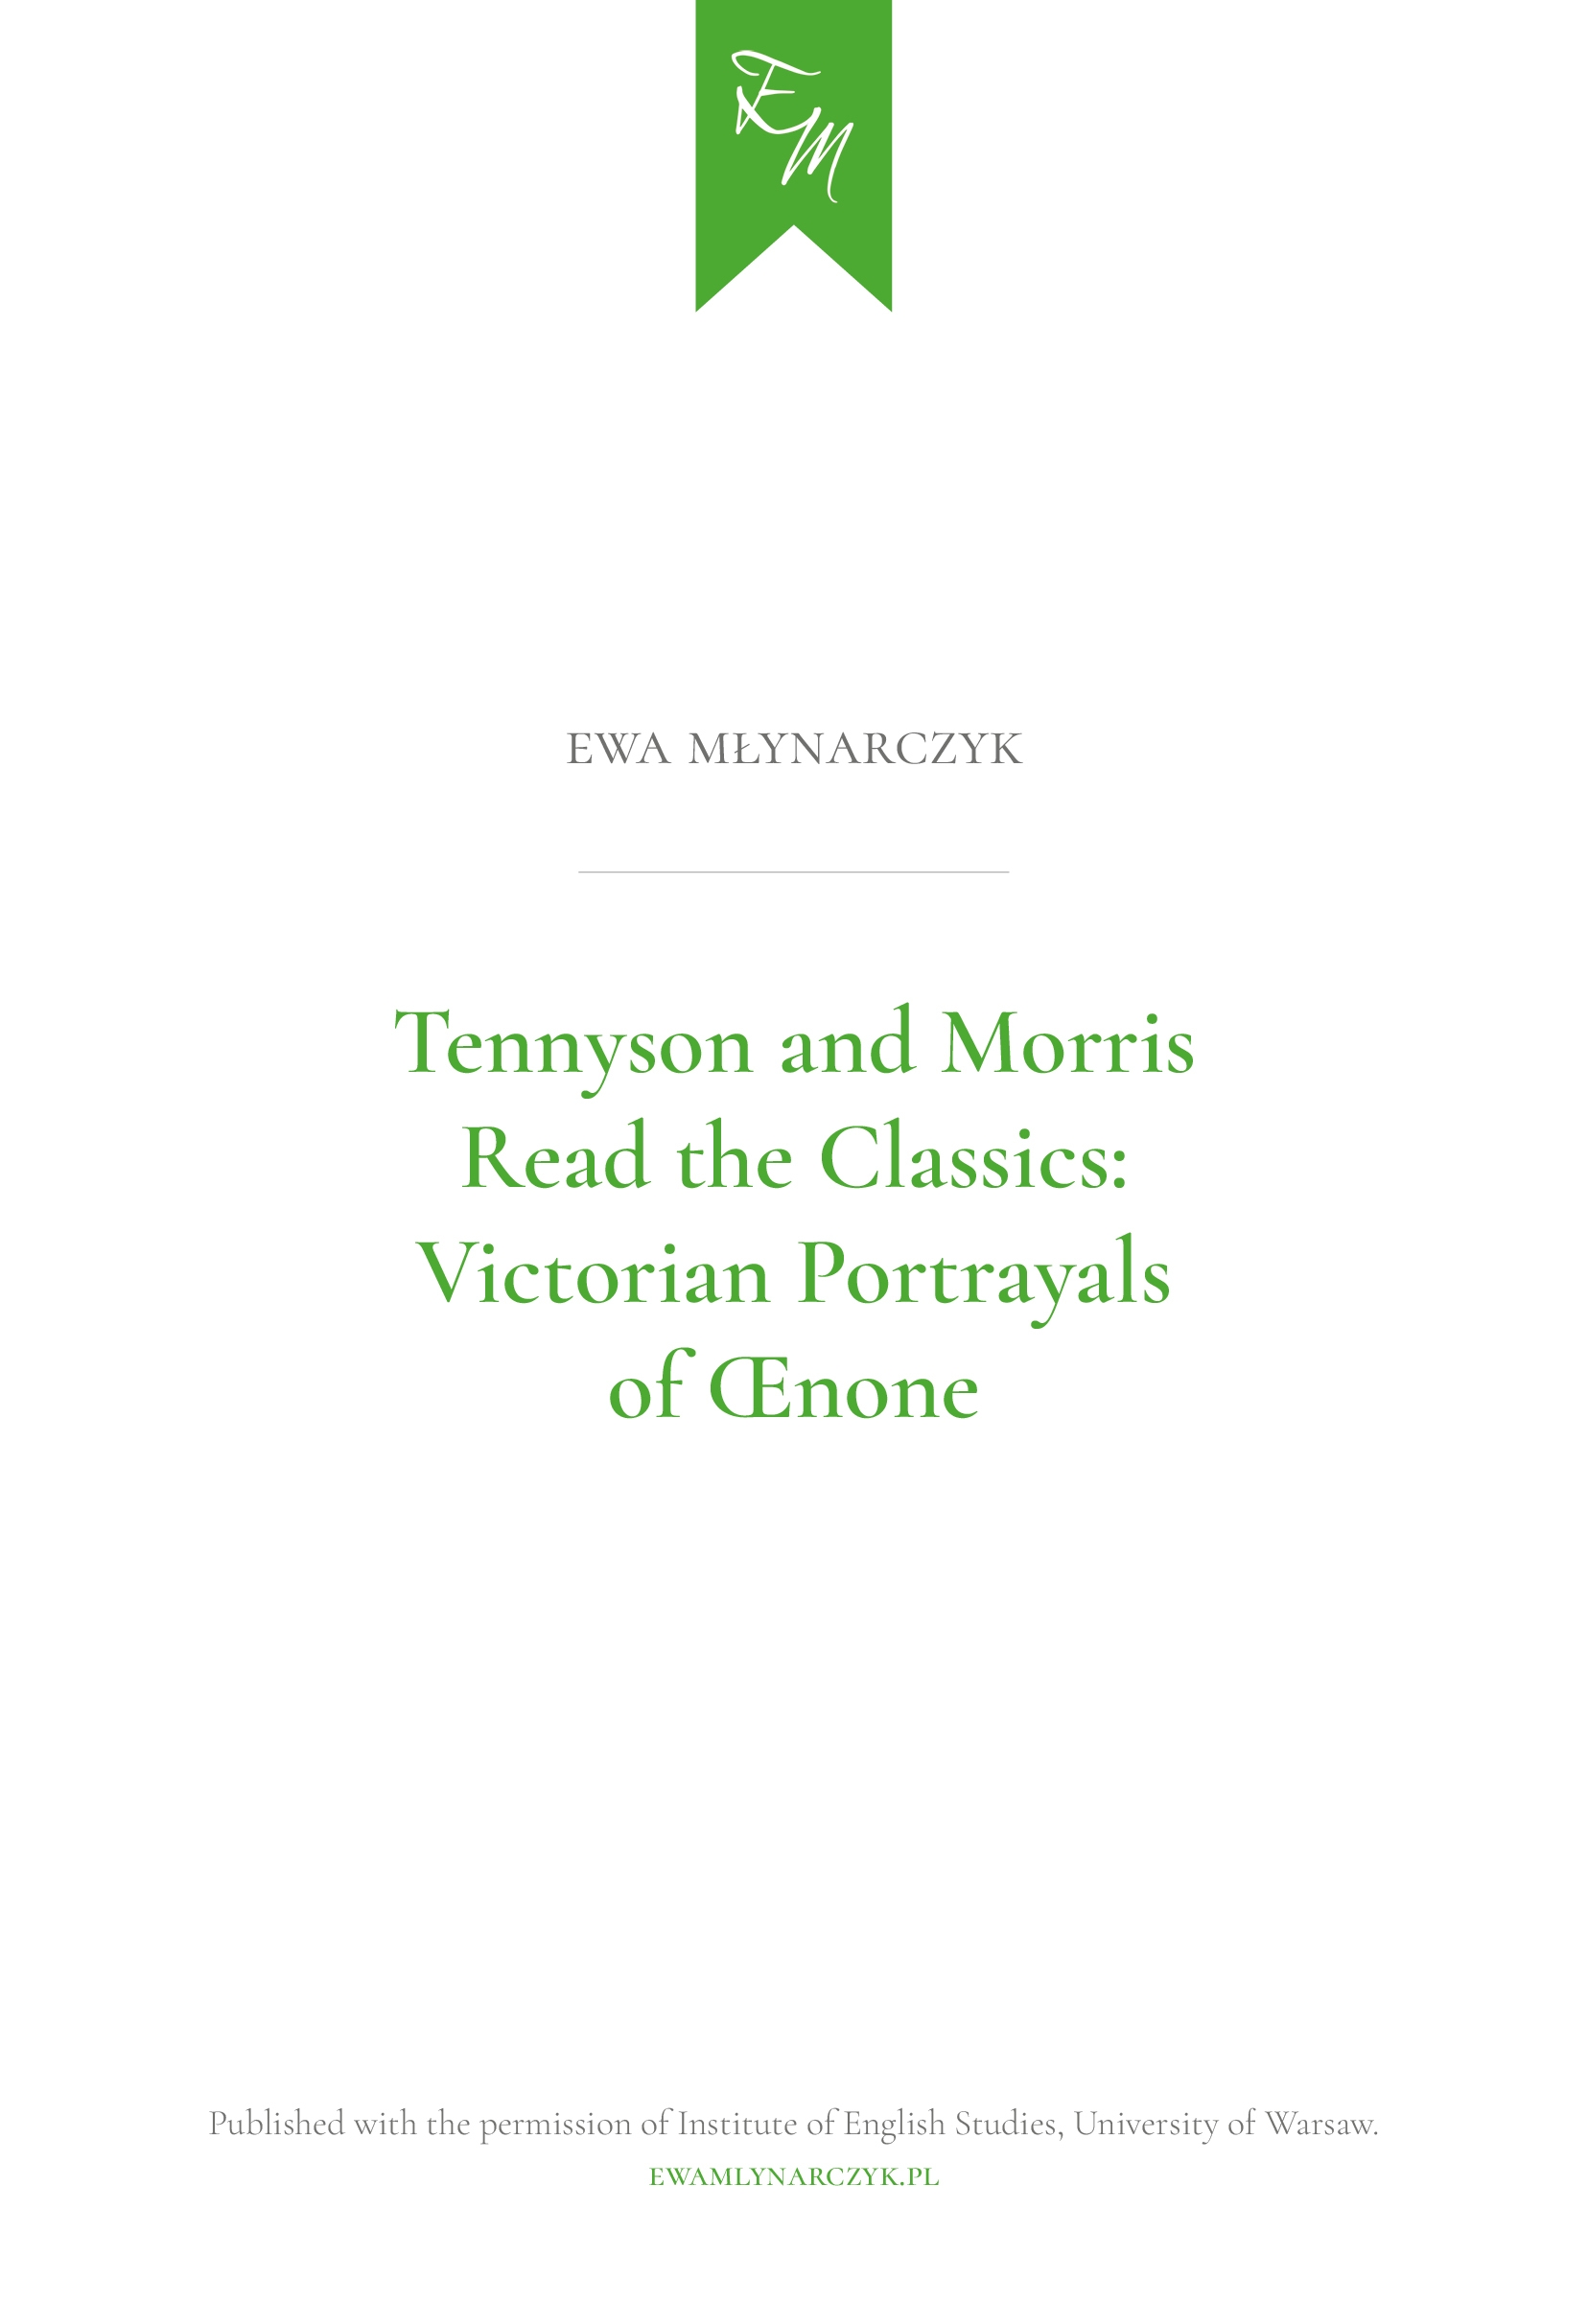 Articles by Ewa Młynarczyk / Artykuły Ewy Młynarczyk: Tennyson and Morris Read the Classics: Victorian Portrayals of Oenone